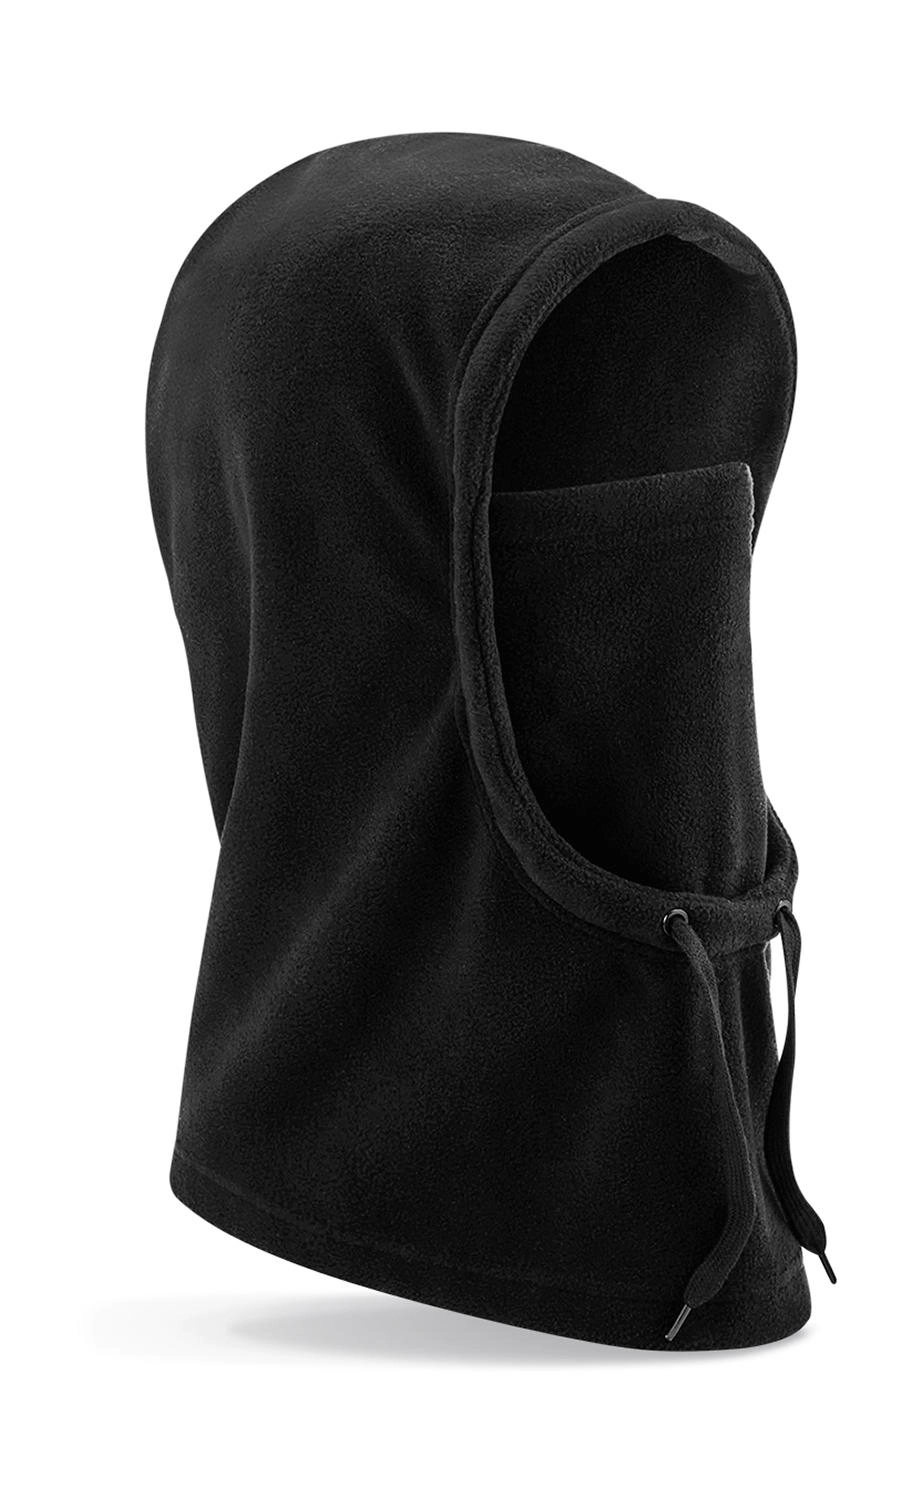 Recycled Fleece Hood zum Besticken und Bedrucken in der Farbe Black mit Ihren Logo, Schriftzug oder Motiv.